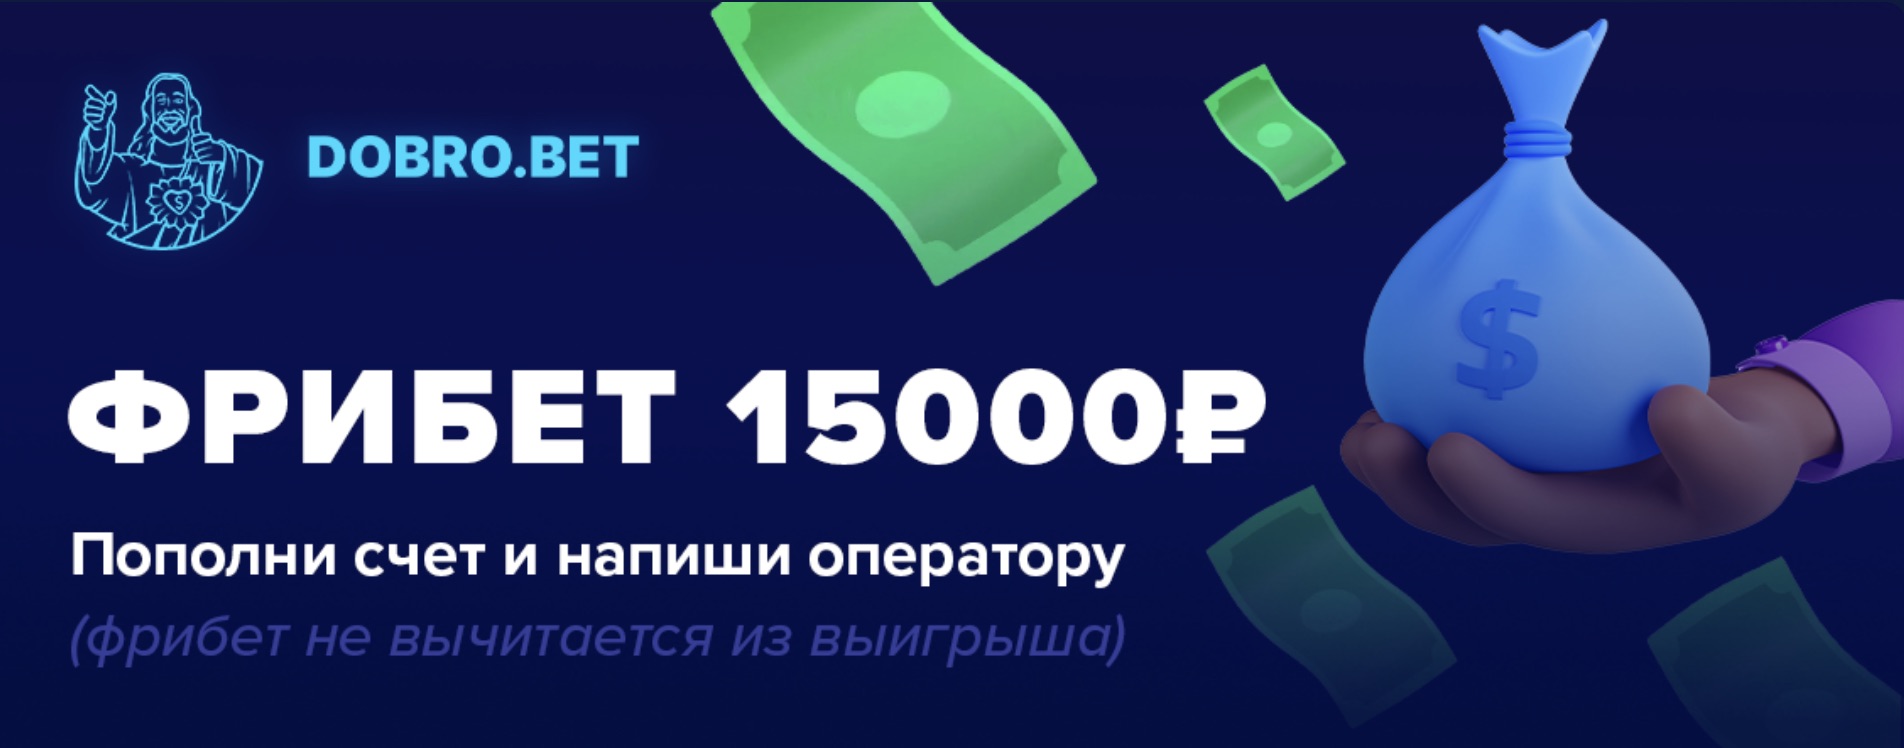 Приветственный фрибет 15000 рублей на сайте БК Dobrobet